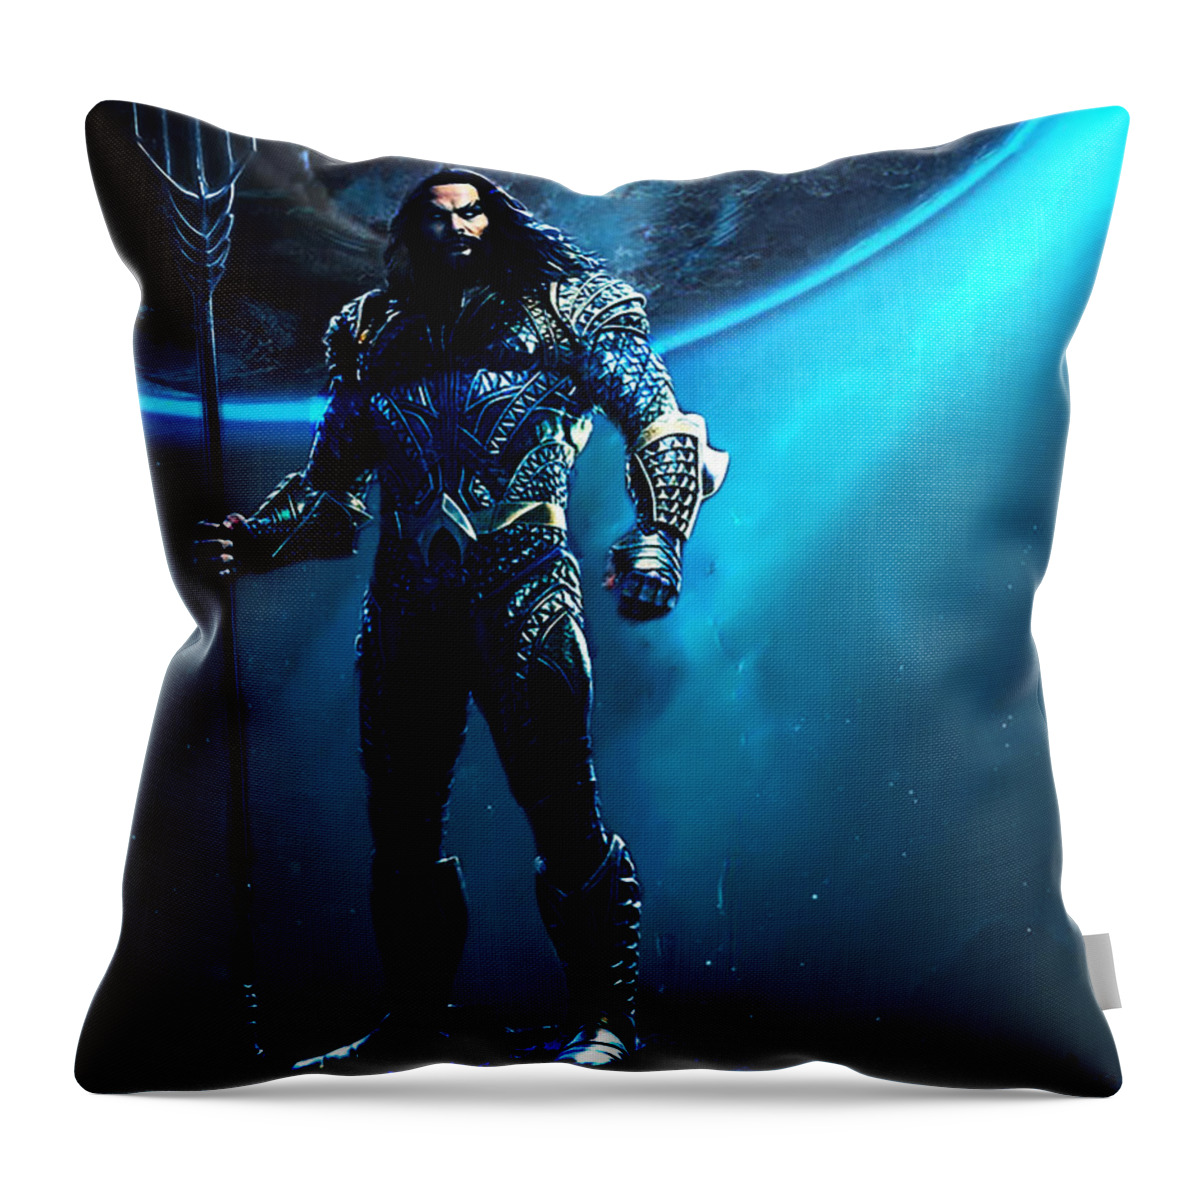 Aquaman 1 Throw Pillow featuring the digital art Aquaman 1 by Aldane Wynter